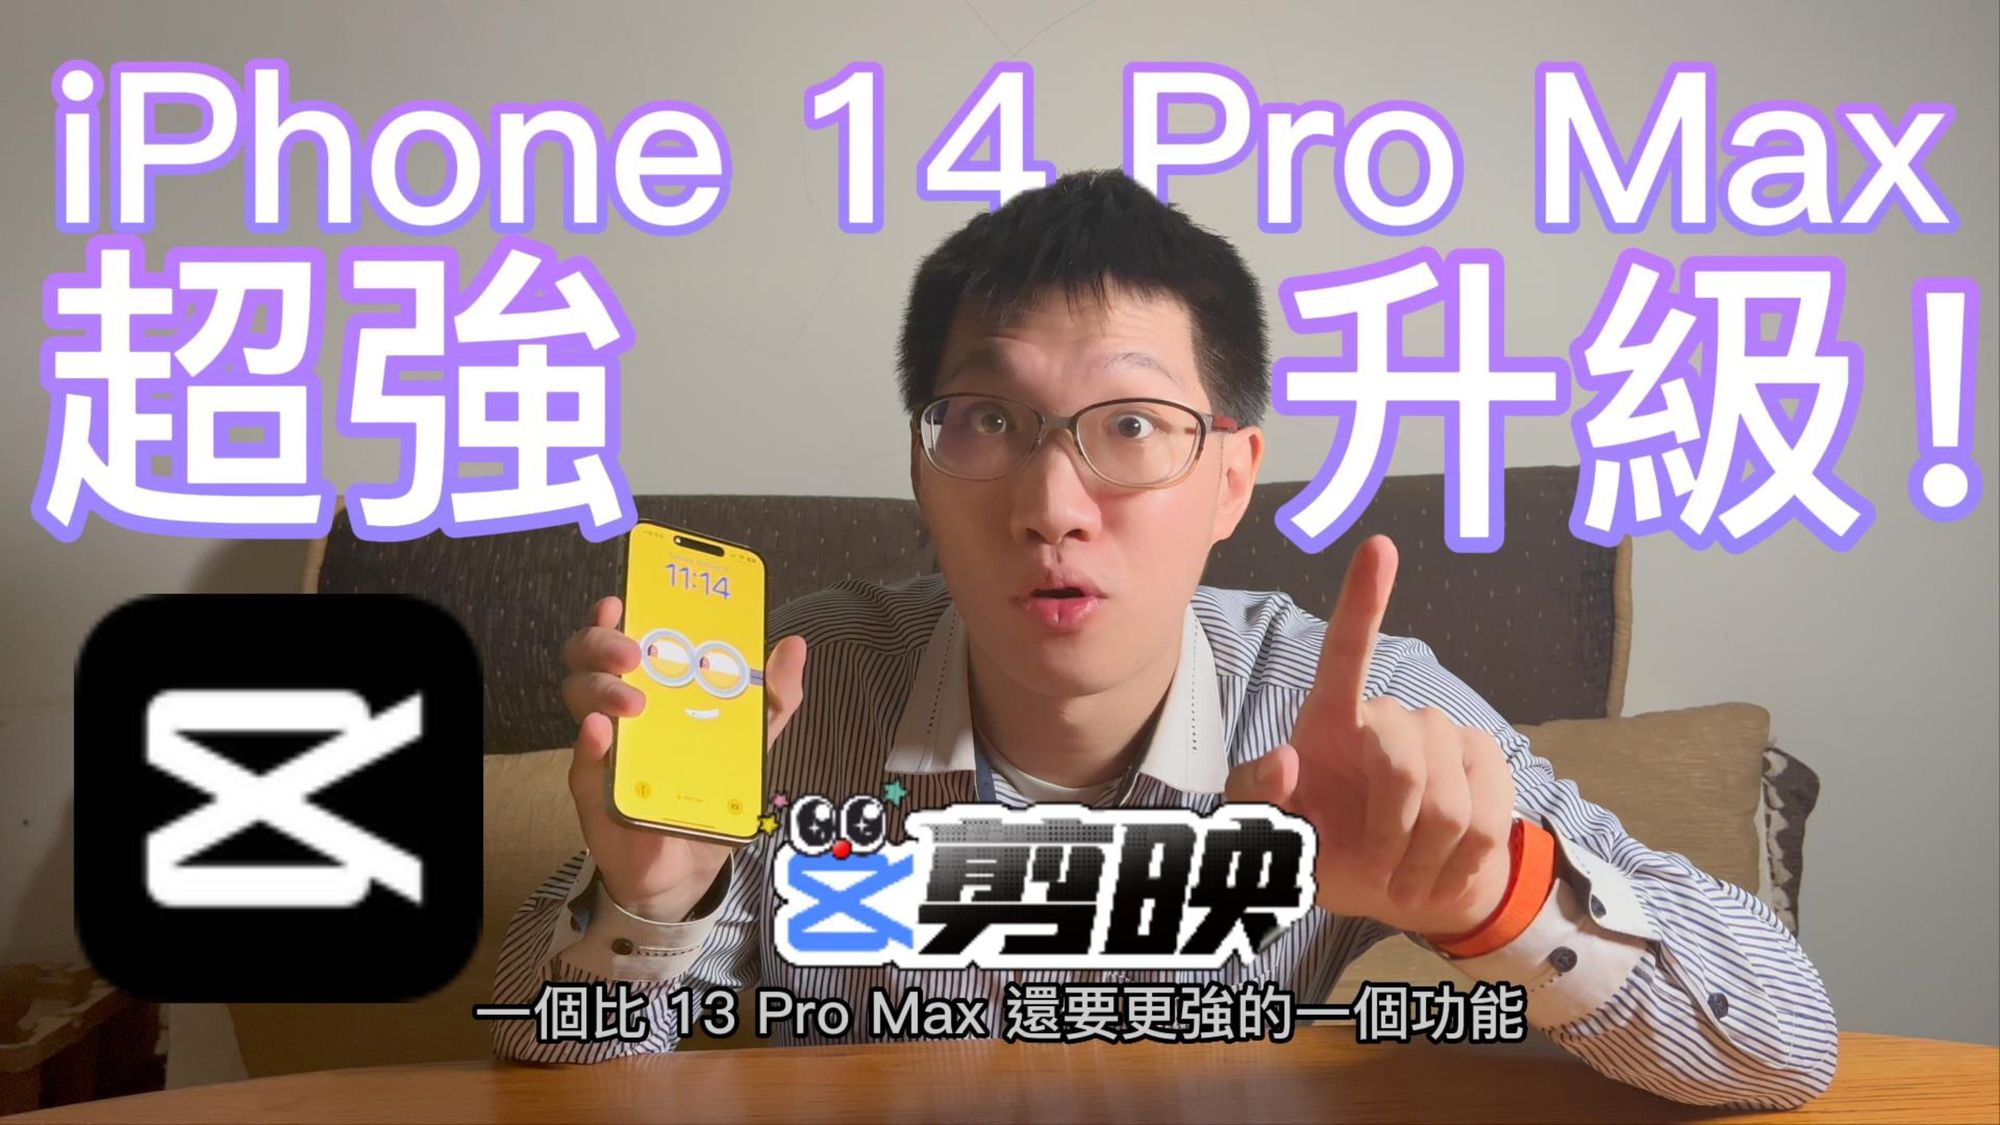 太扯了! iPhone 14 Pro Max 大升級! 剪映輸出快兩倍! 